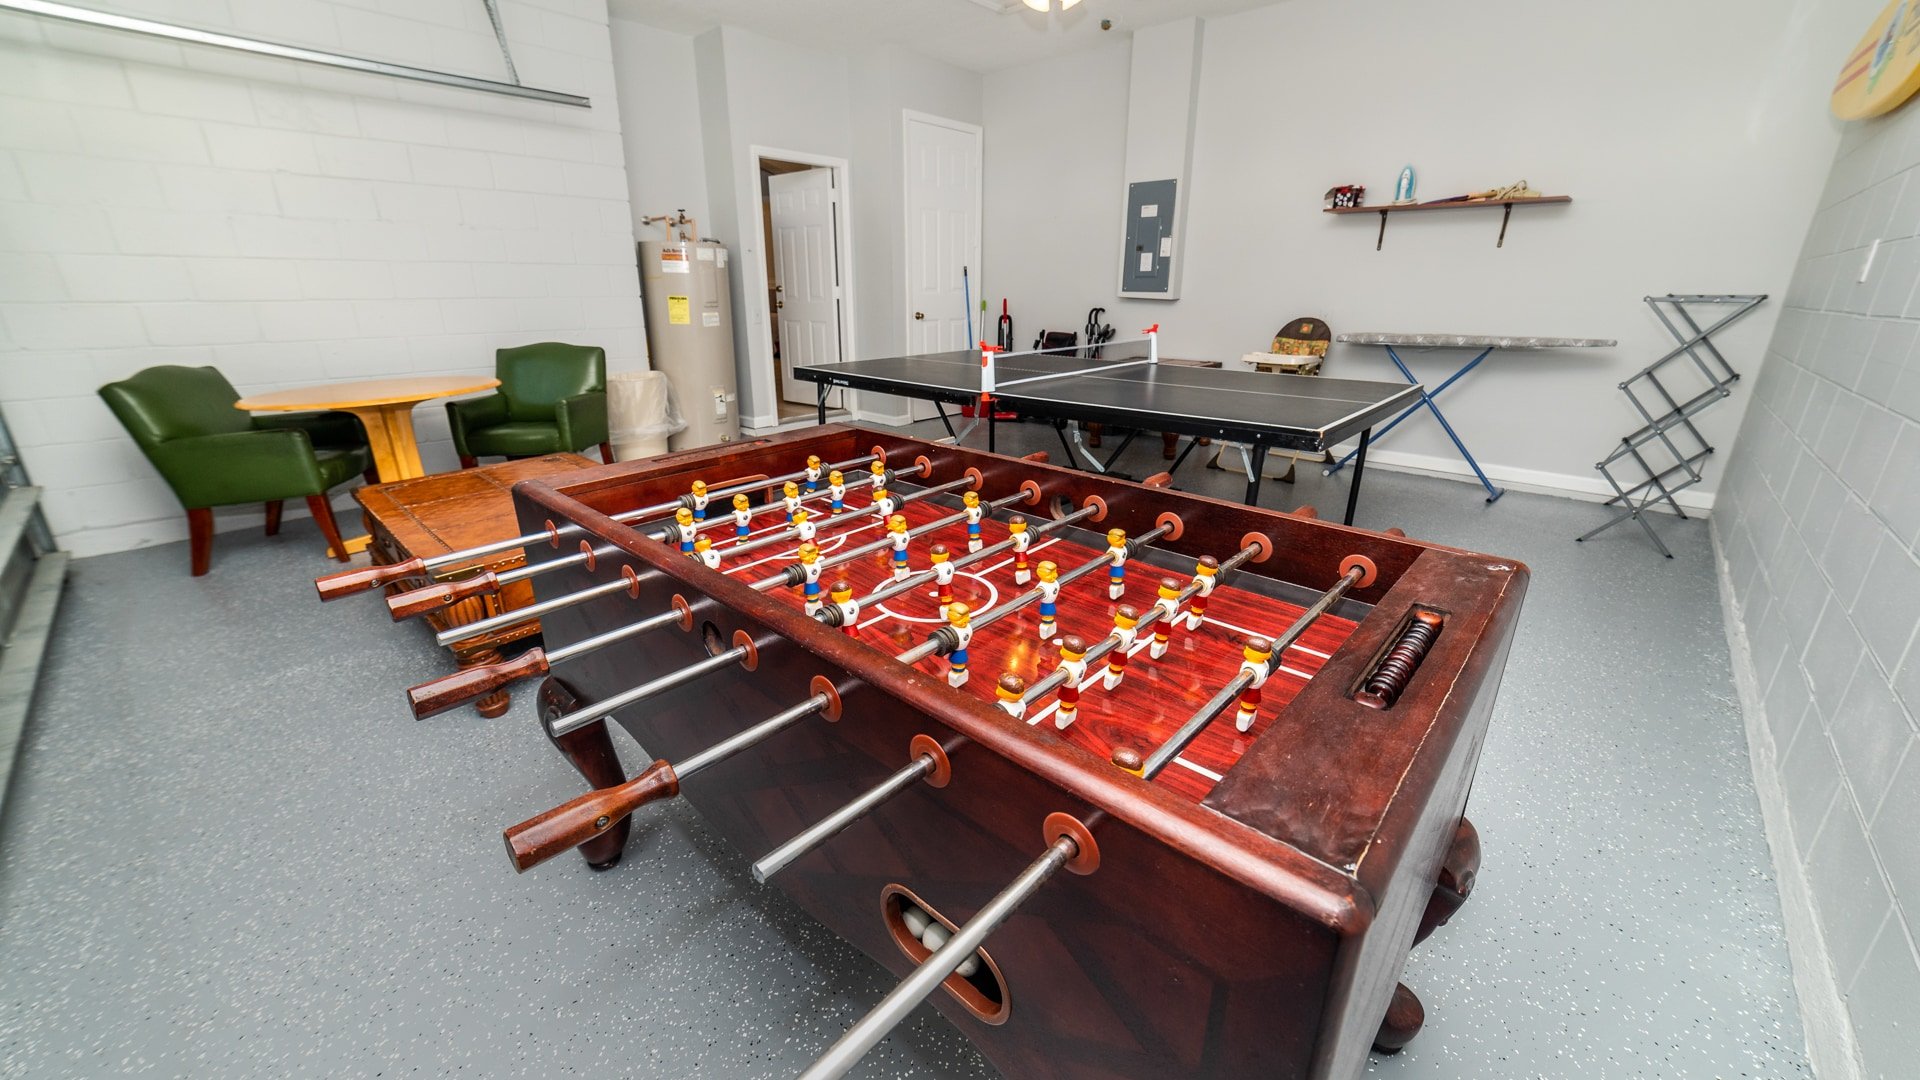 Game Room Angle
Ping Pong Table
Foosball Table